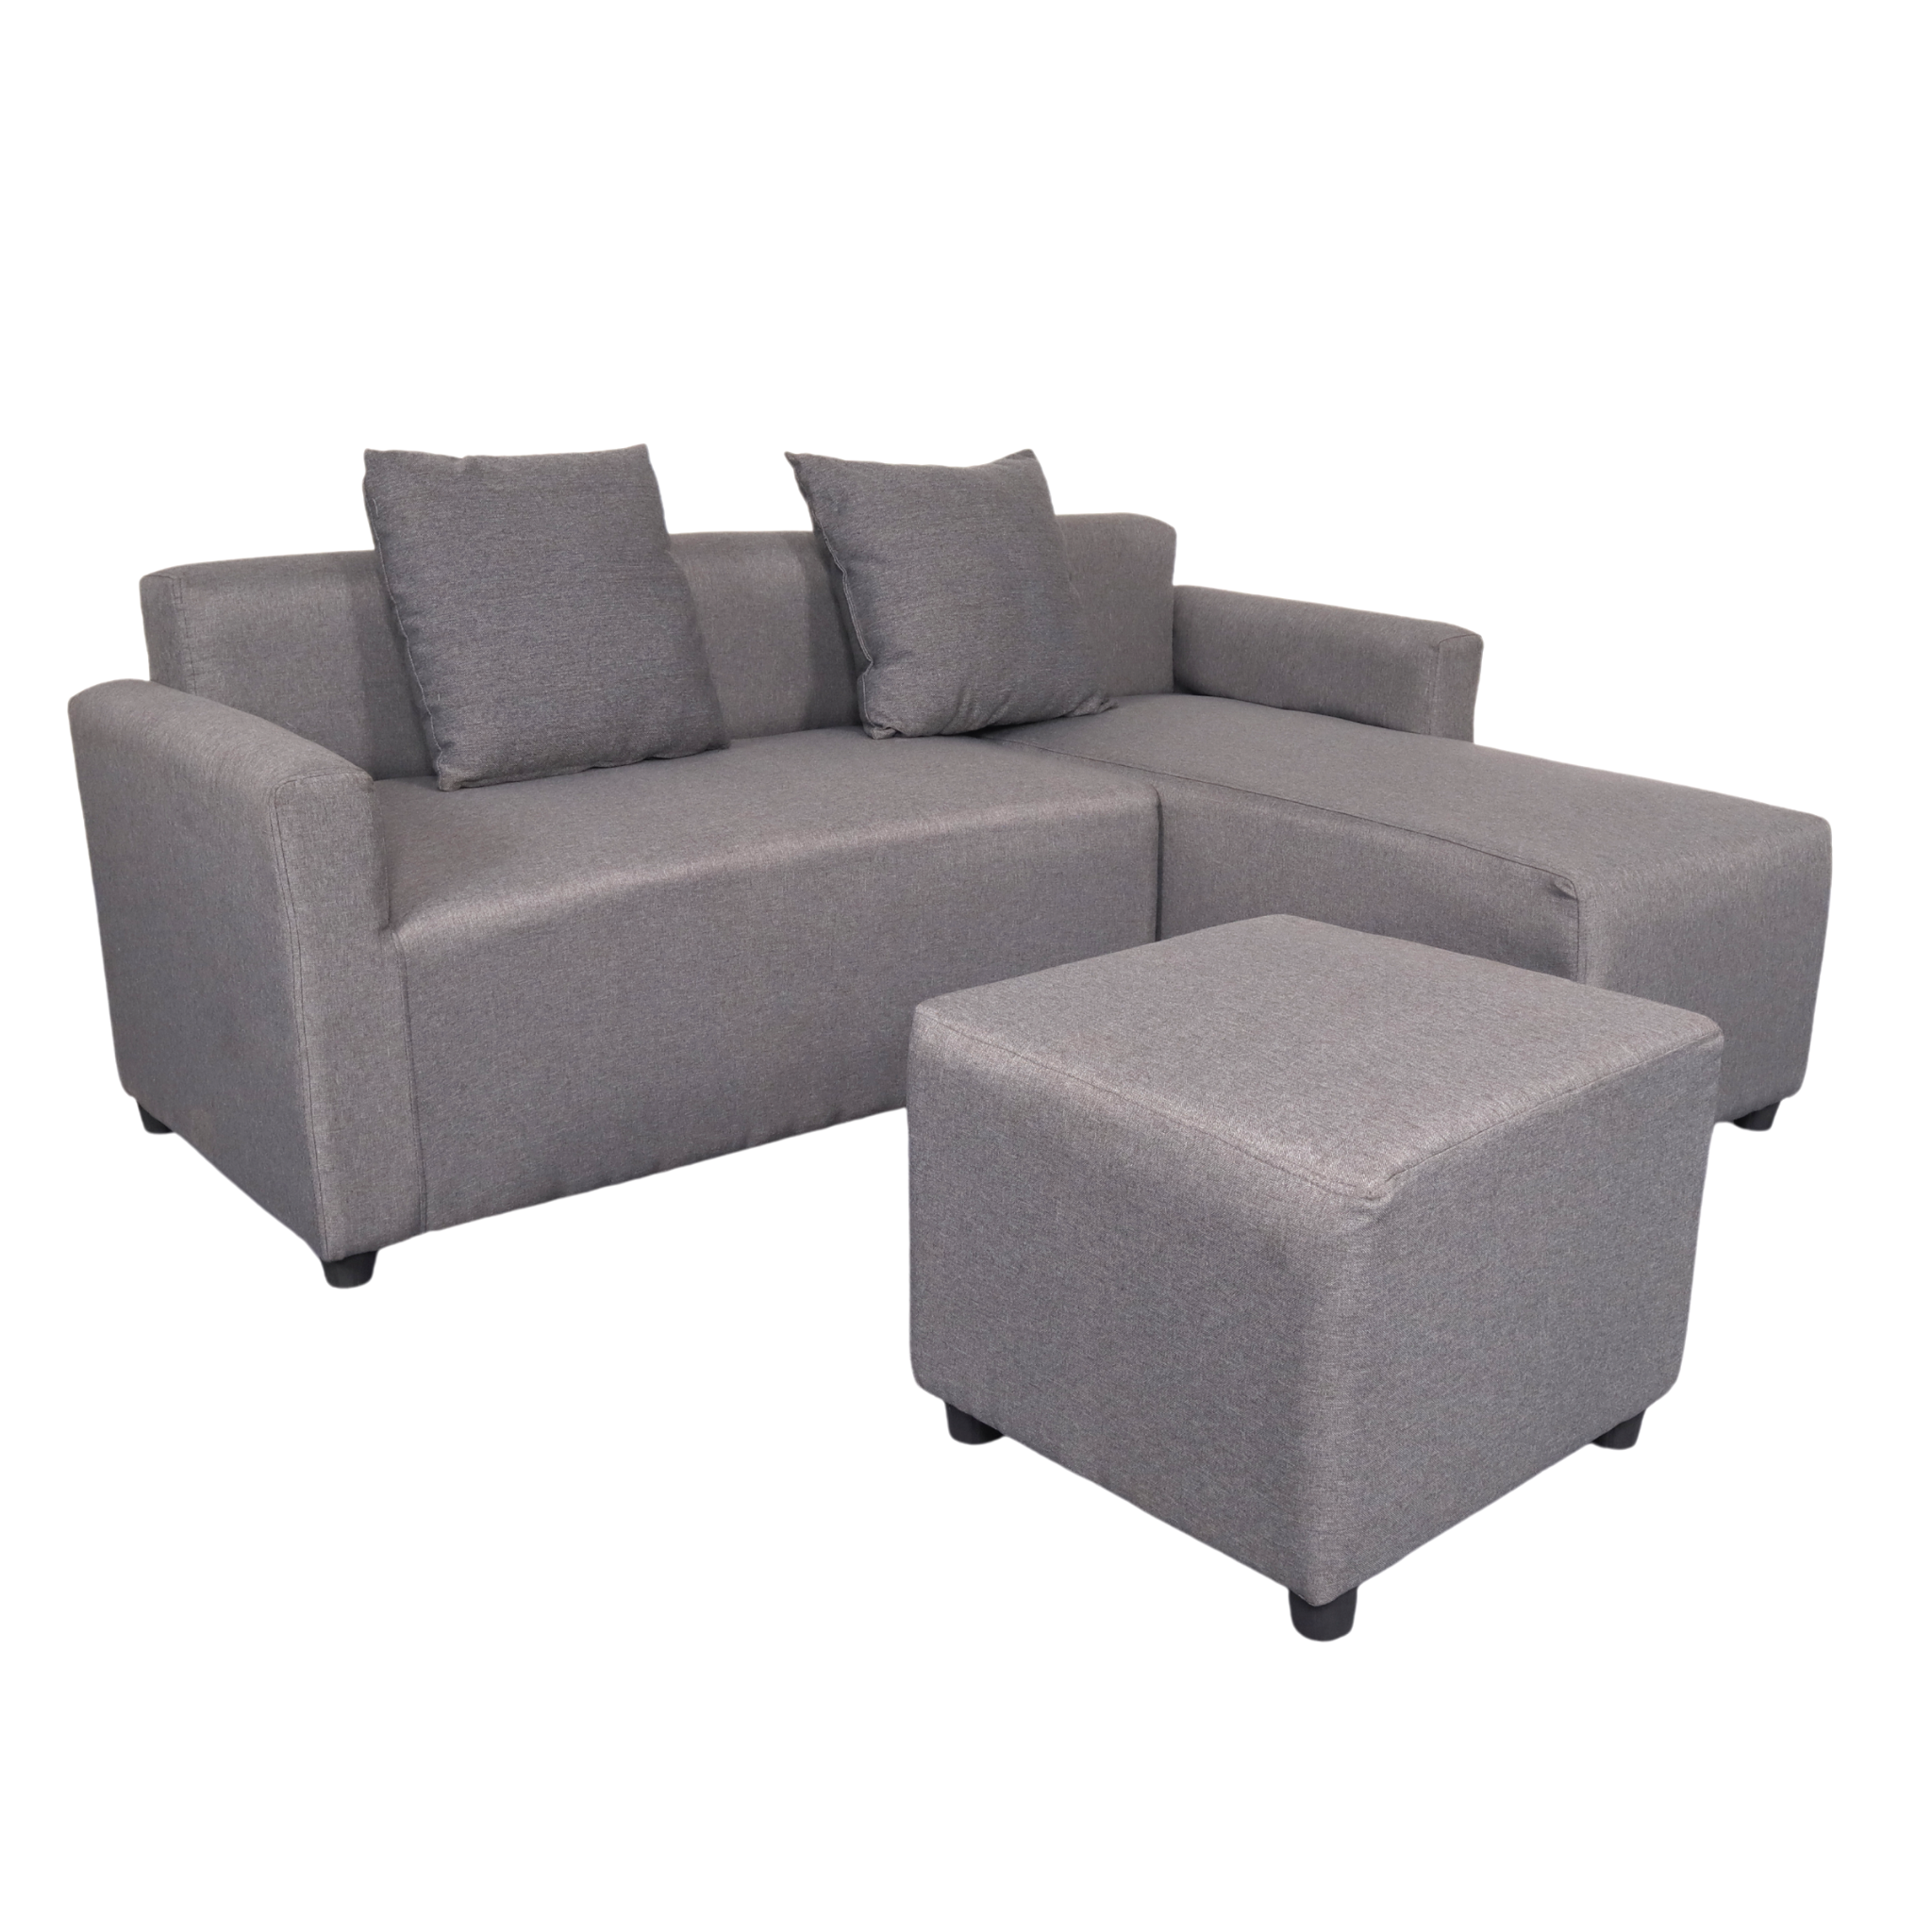 HARVEY L-Shape Fabric Sofa with Ottoman AF Home